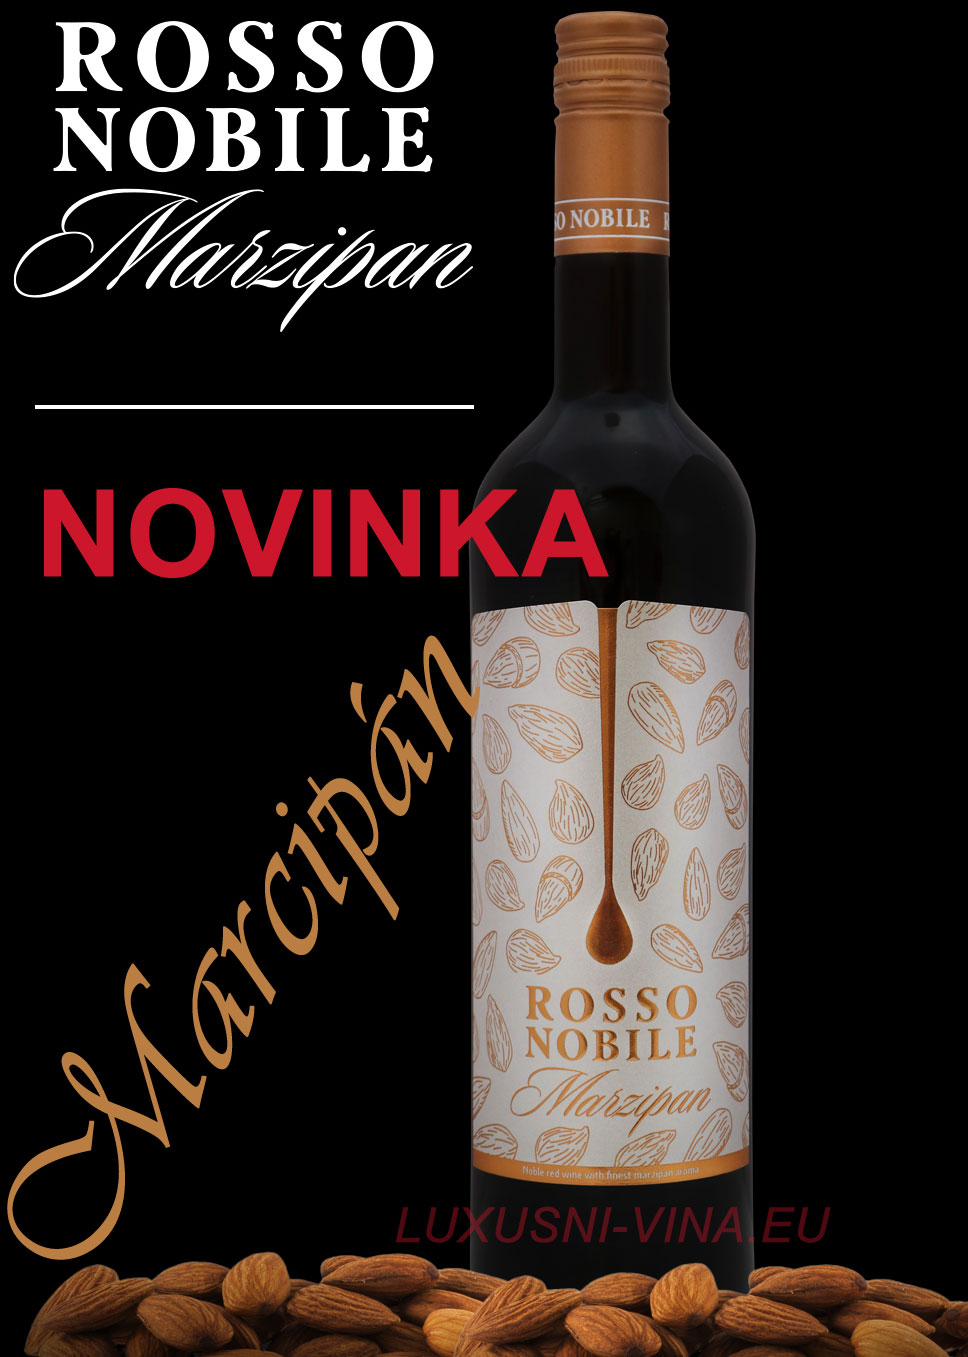 Rosso nobile Marzipan vína